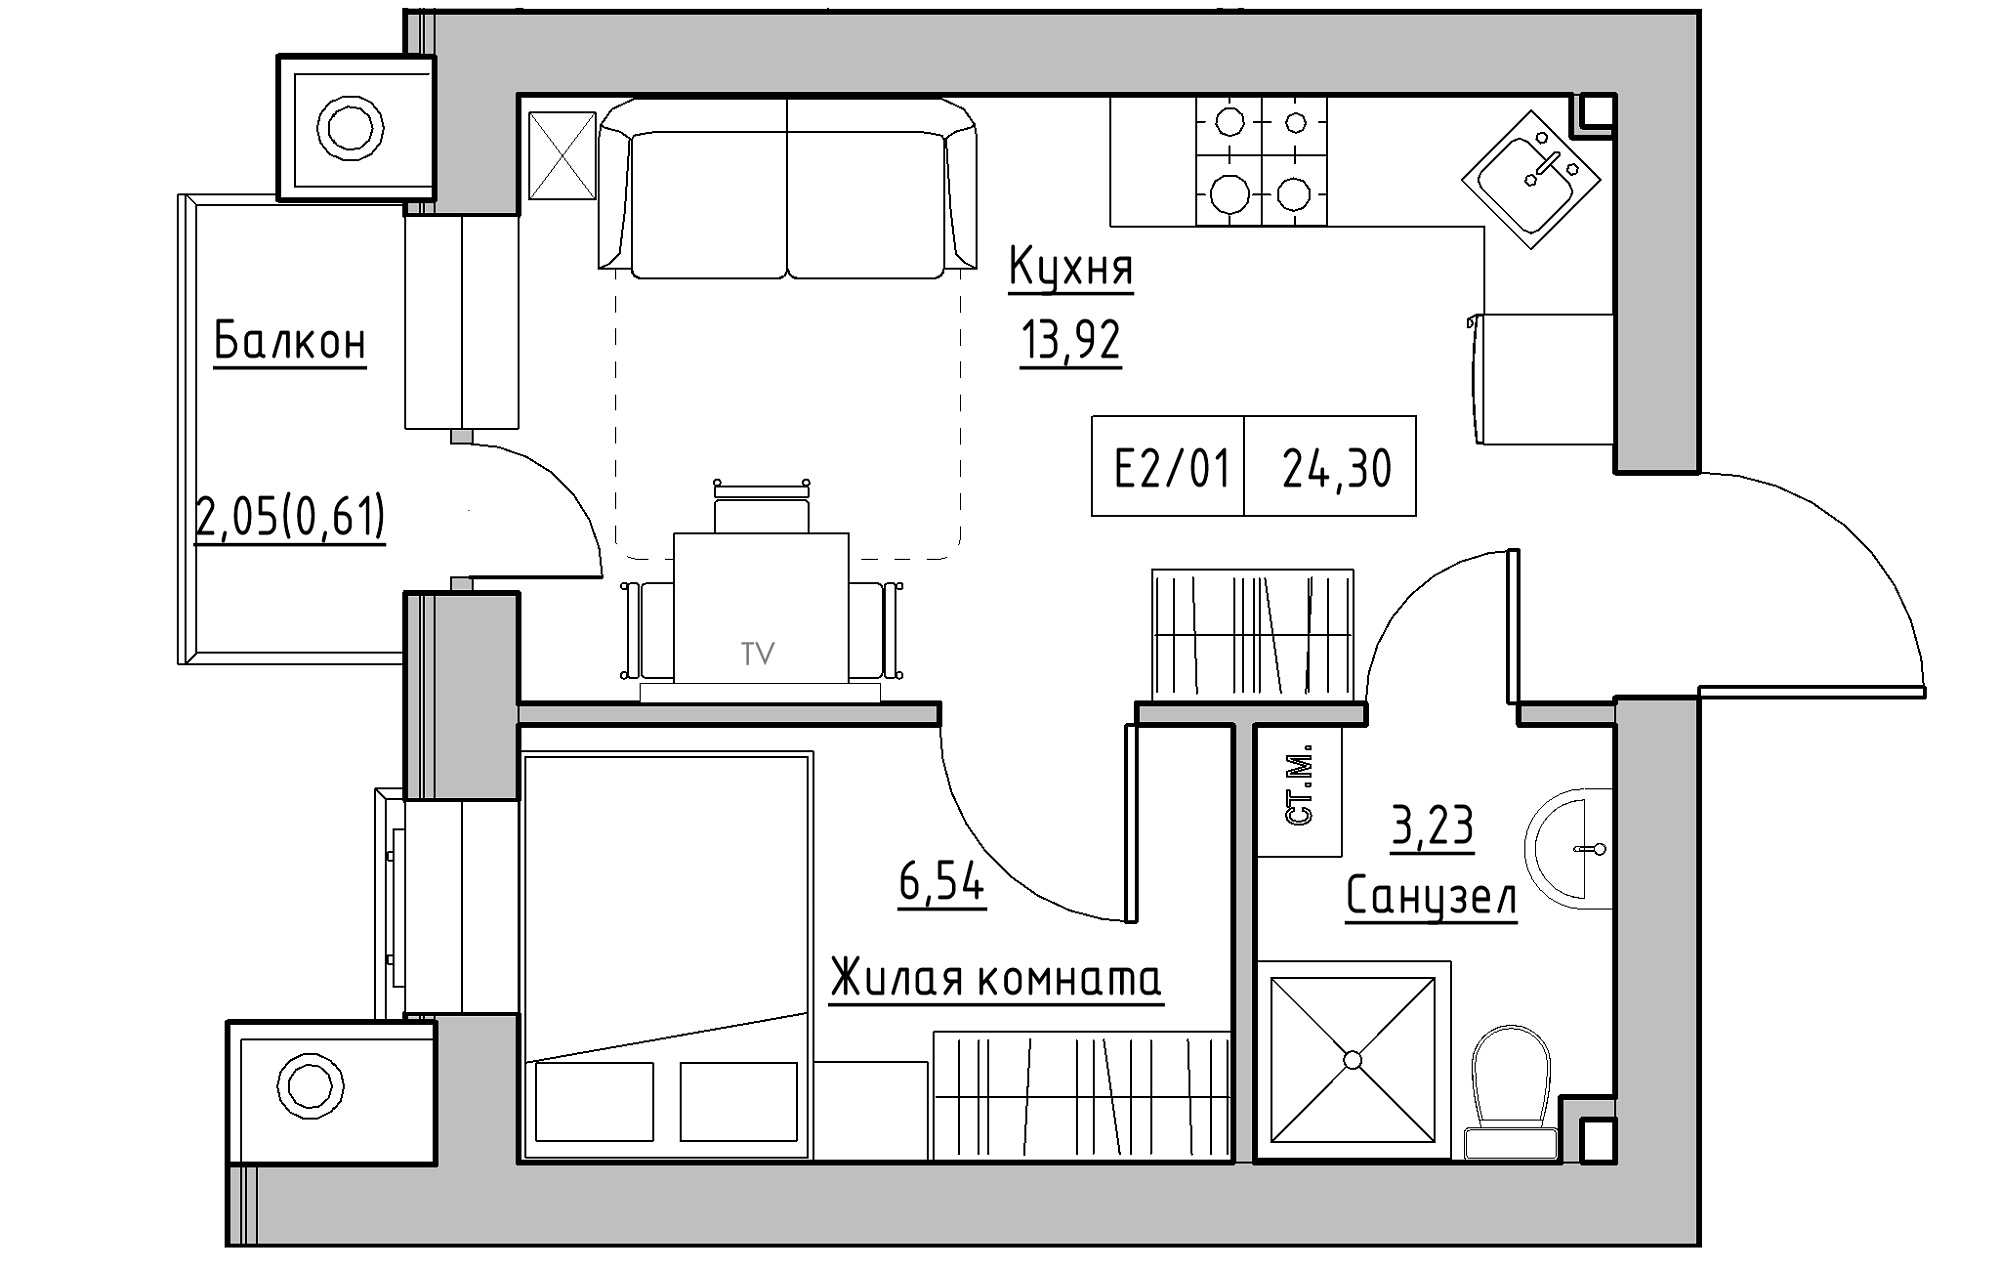 Планування 1-к квартира площею 24.3м2, KS-013-03/0005.